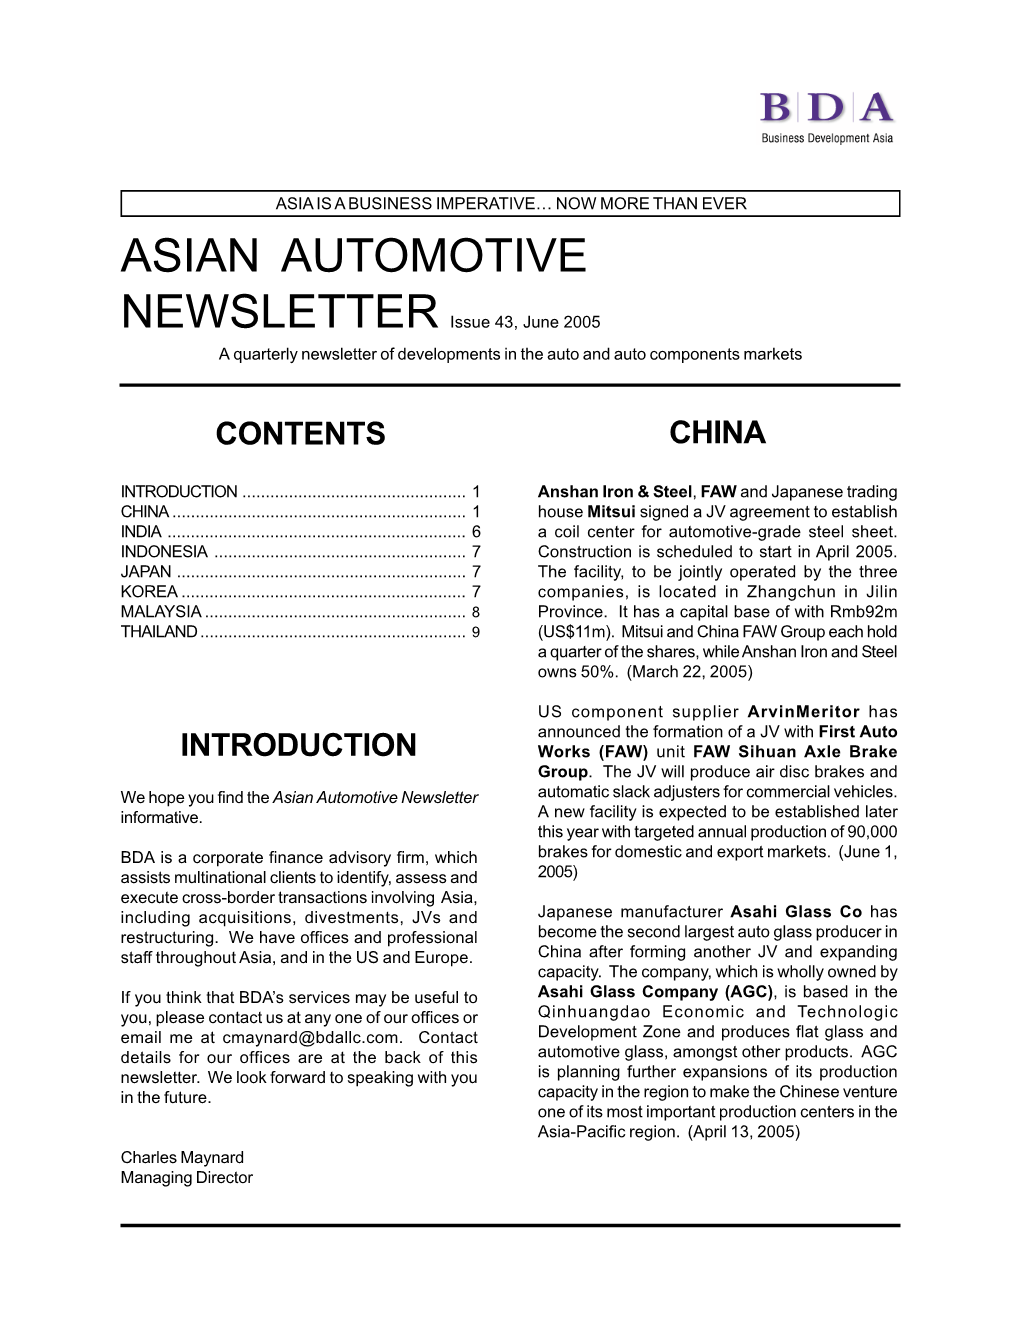 Asian Auto Newsletter Mar 2005